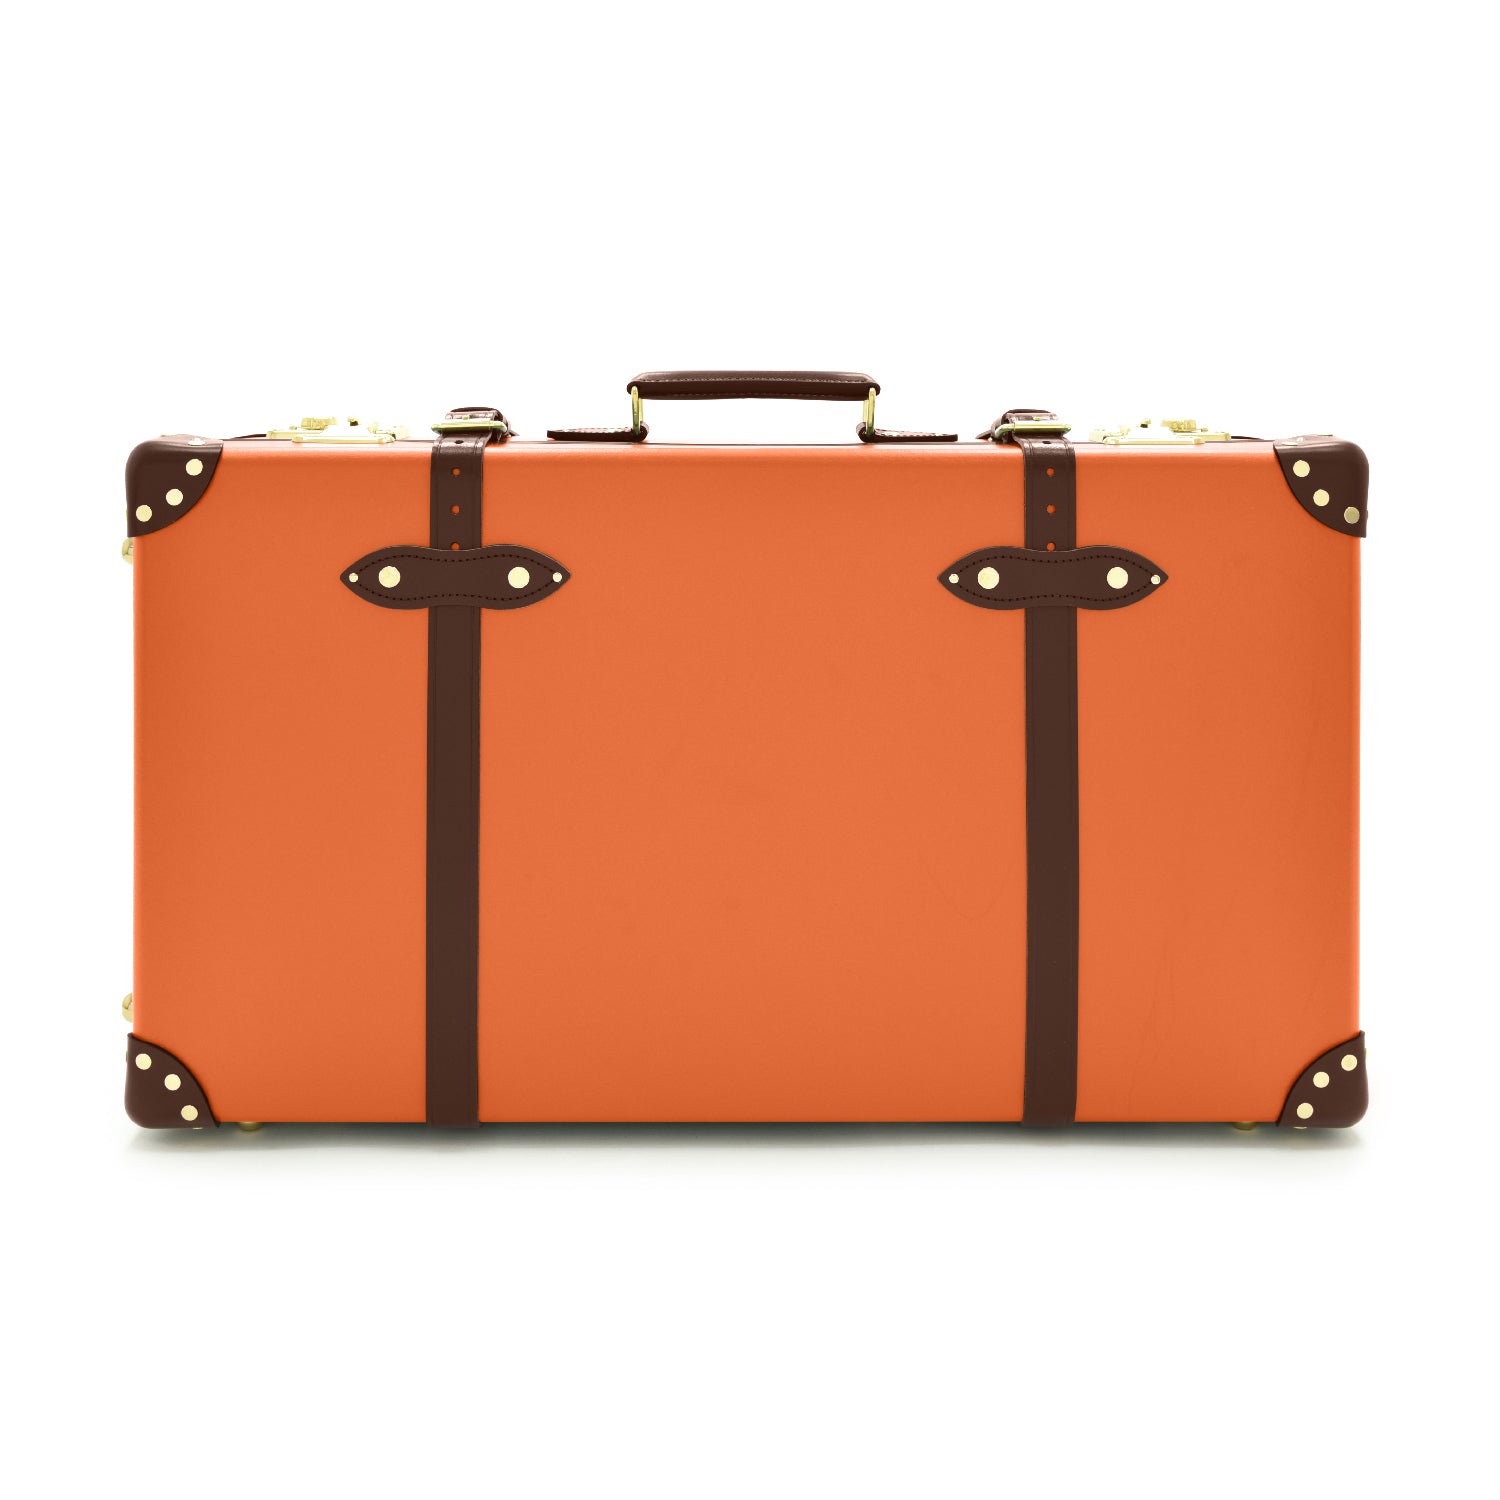 グローブトロッター 21インチ トロリーケース スーツケース オレンジ 2